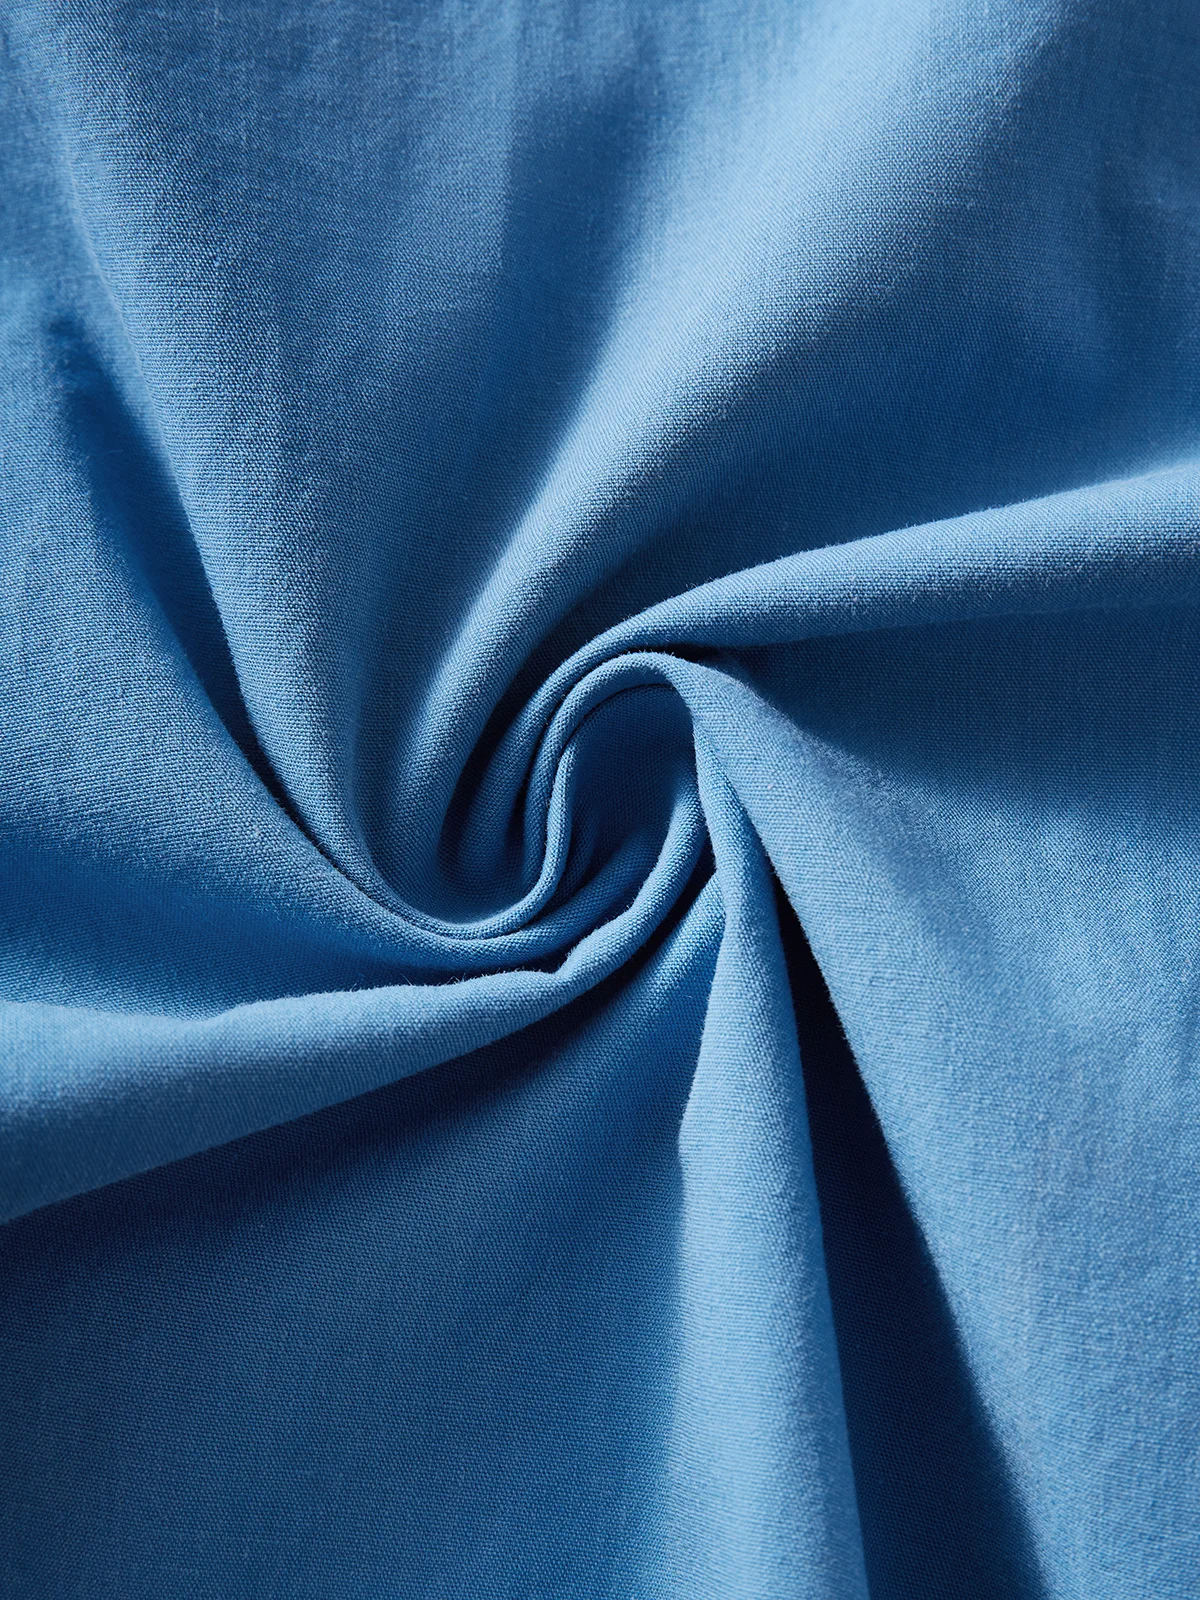 Hardaddy 100%Cotton Patchwork Floral Regular Fit Blue Men Short Sleeve ...